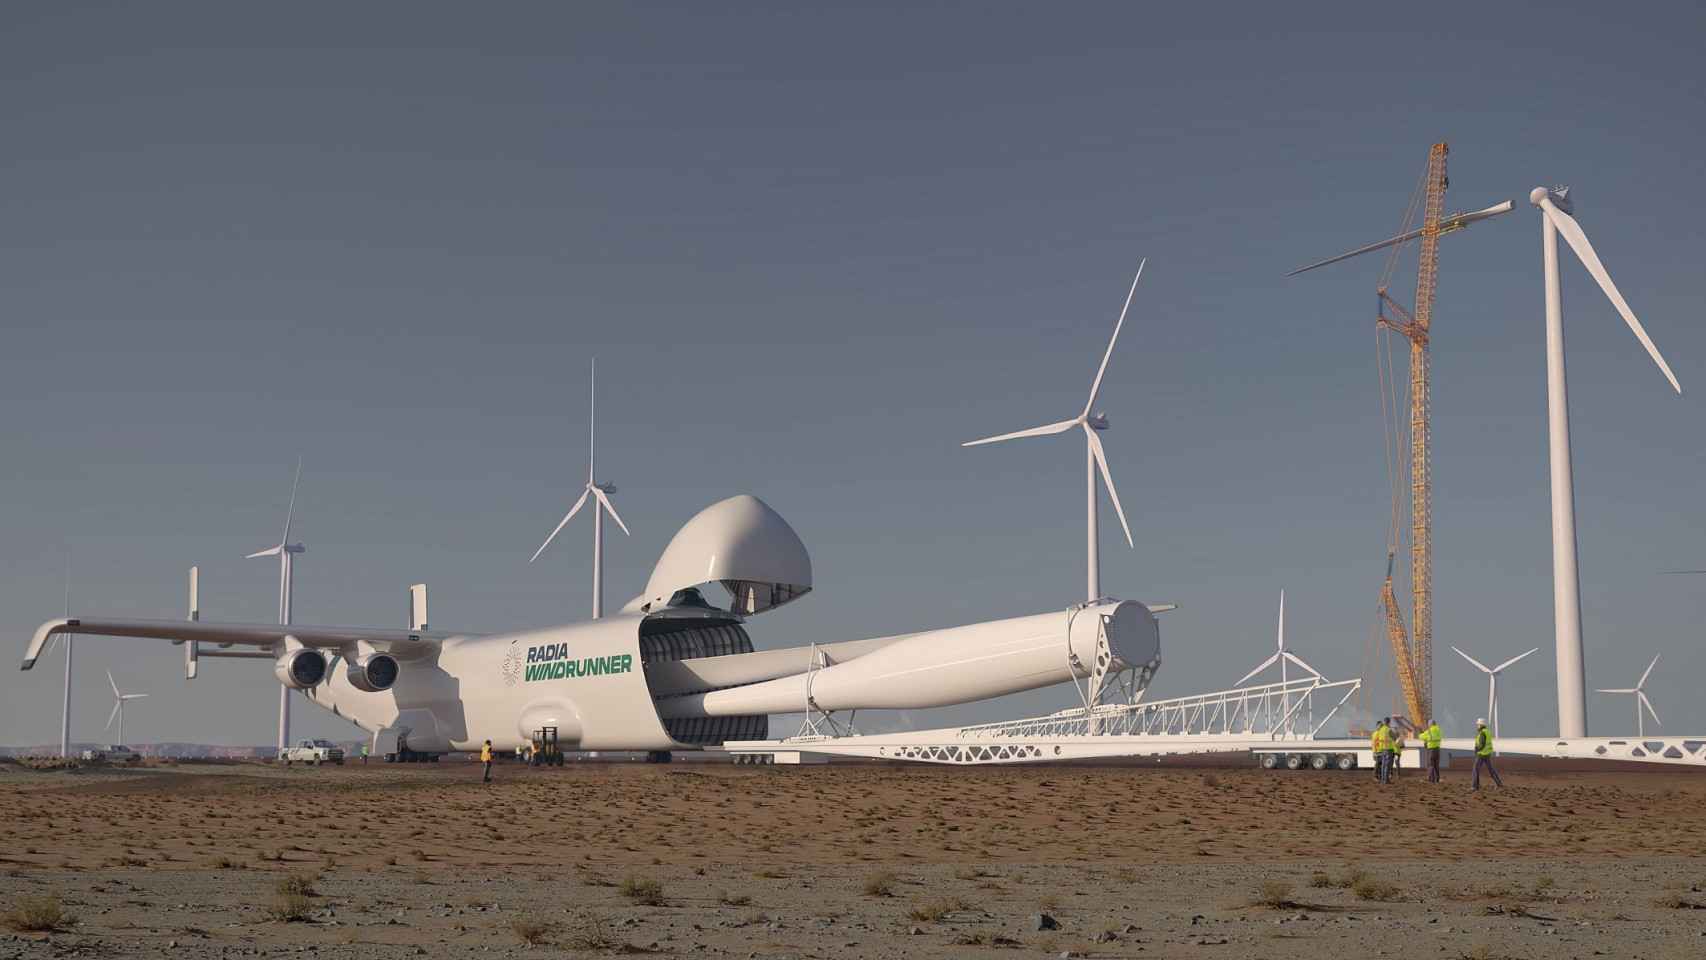 así será windrunner, el avión más grande del mundo: tan largo que puede alojar un aerogenerador en su bodega